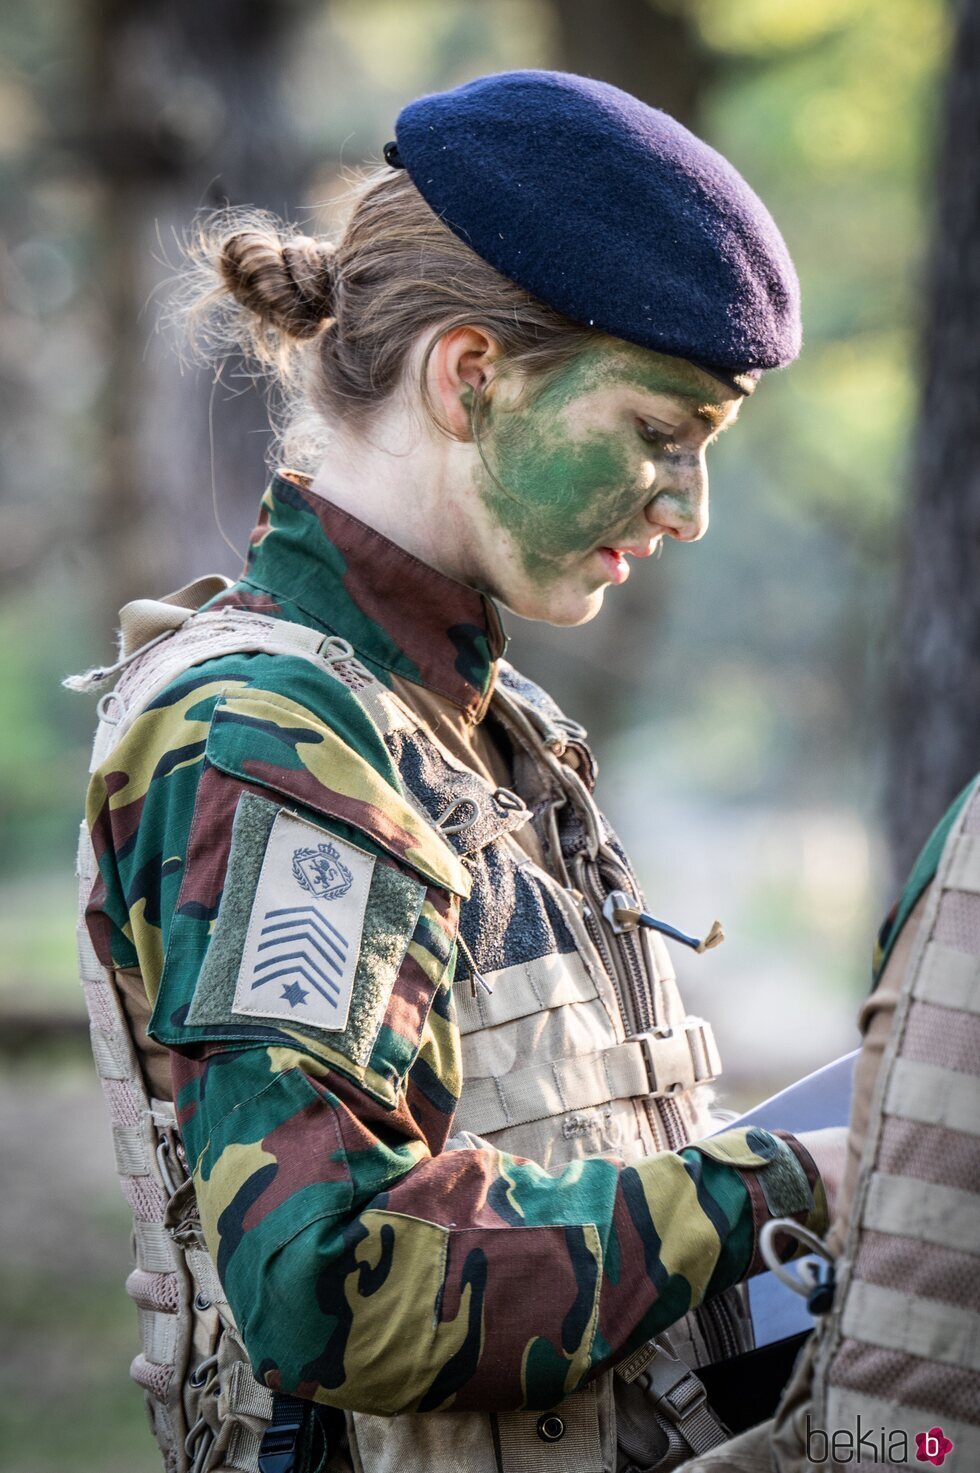 Isabel de Bélgica, de camuflaje en unas prácticas militares en Leopoldsburg